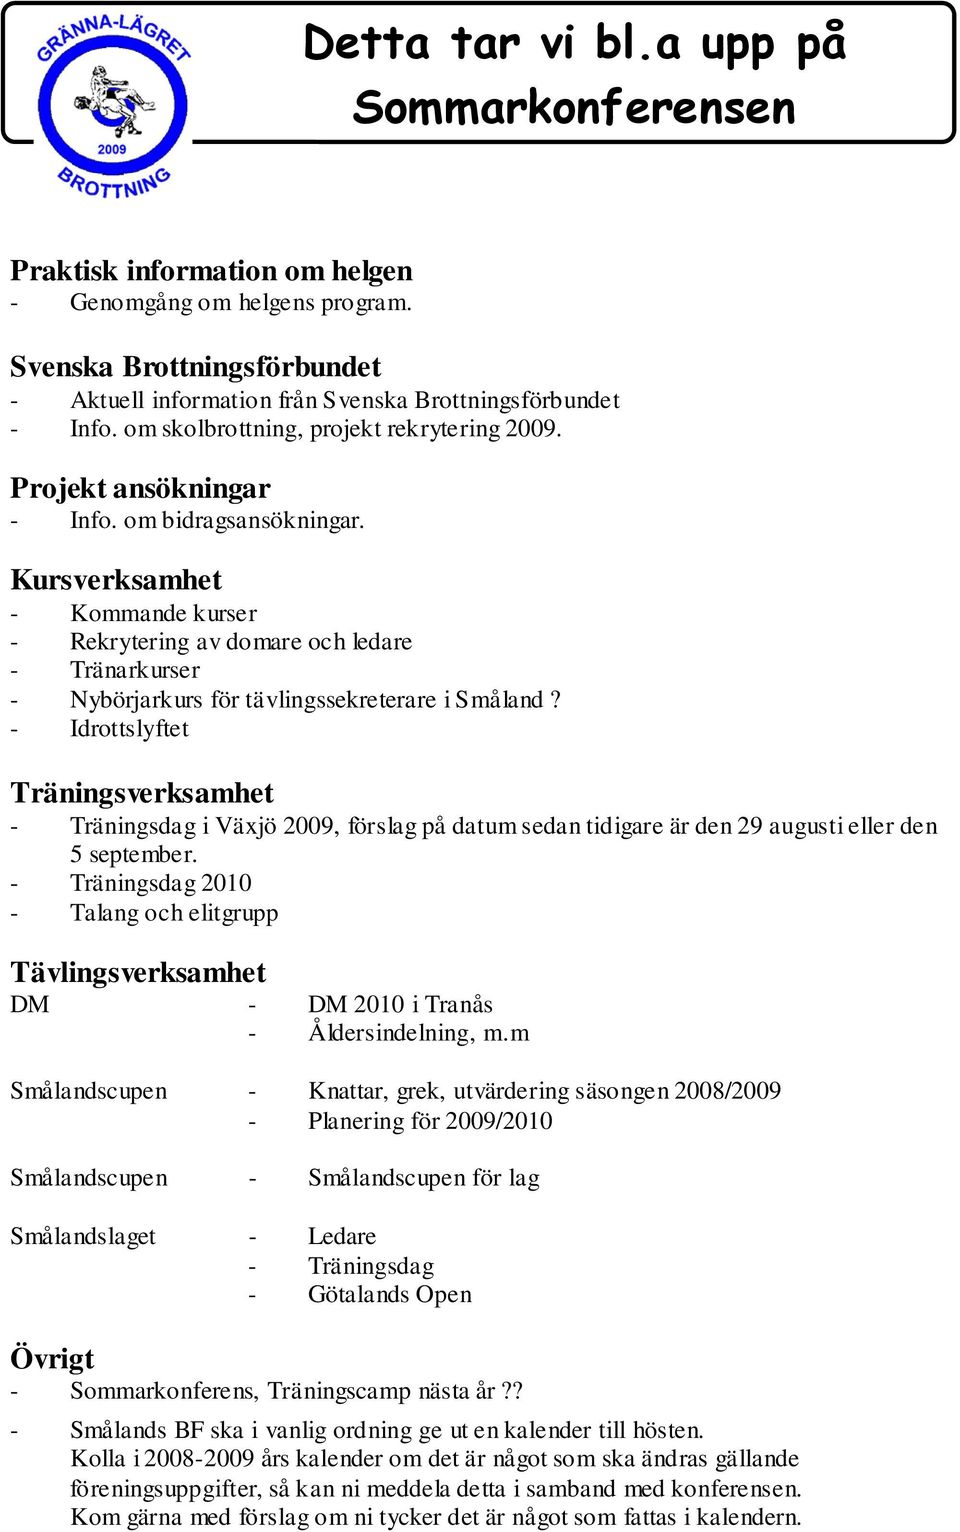 Kursverksamhet - Kommande kurser - Rekrytering av domare och ledare - Tränarkurser - Nybörjarkurs för tävlingssekreterare i Småland?